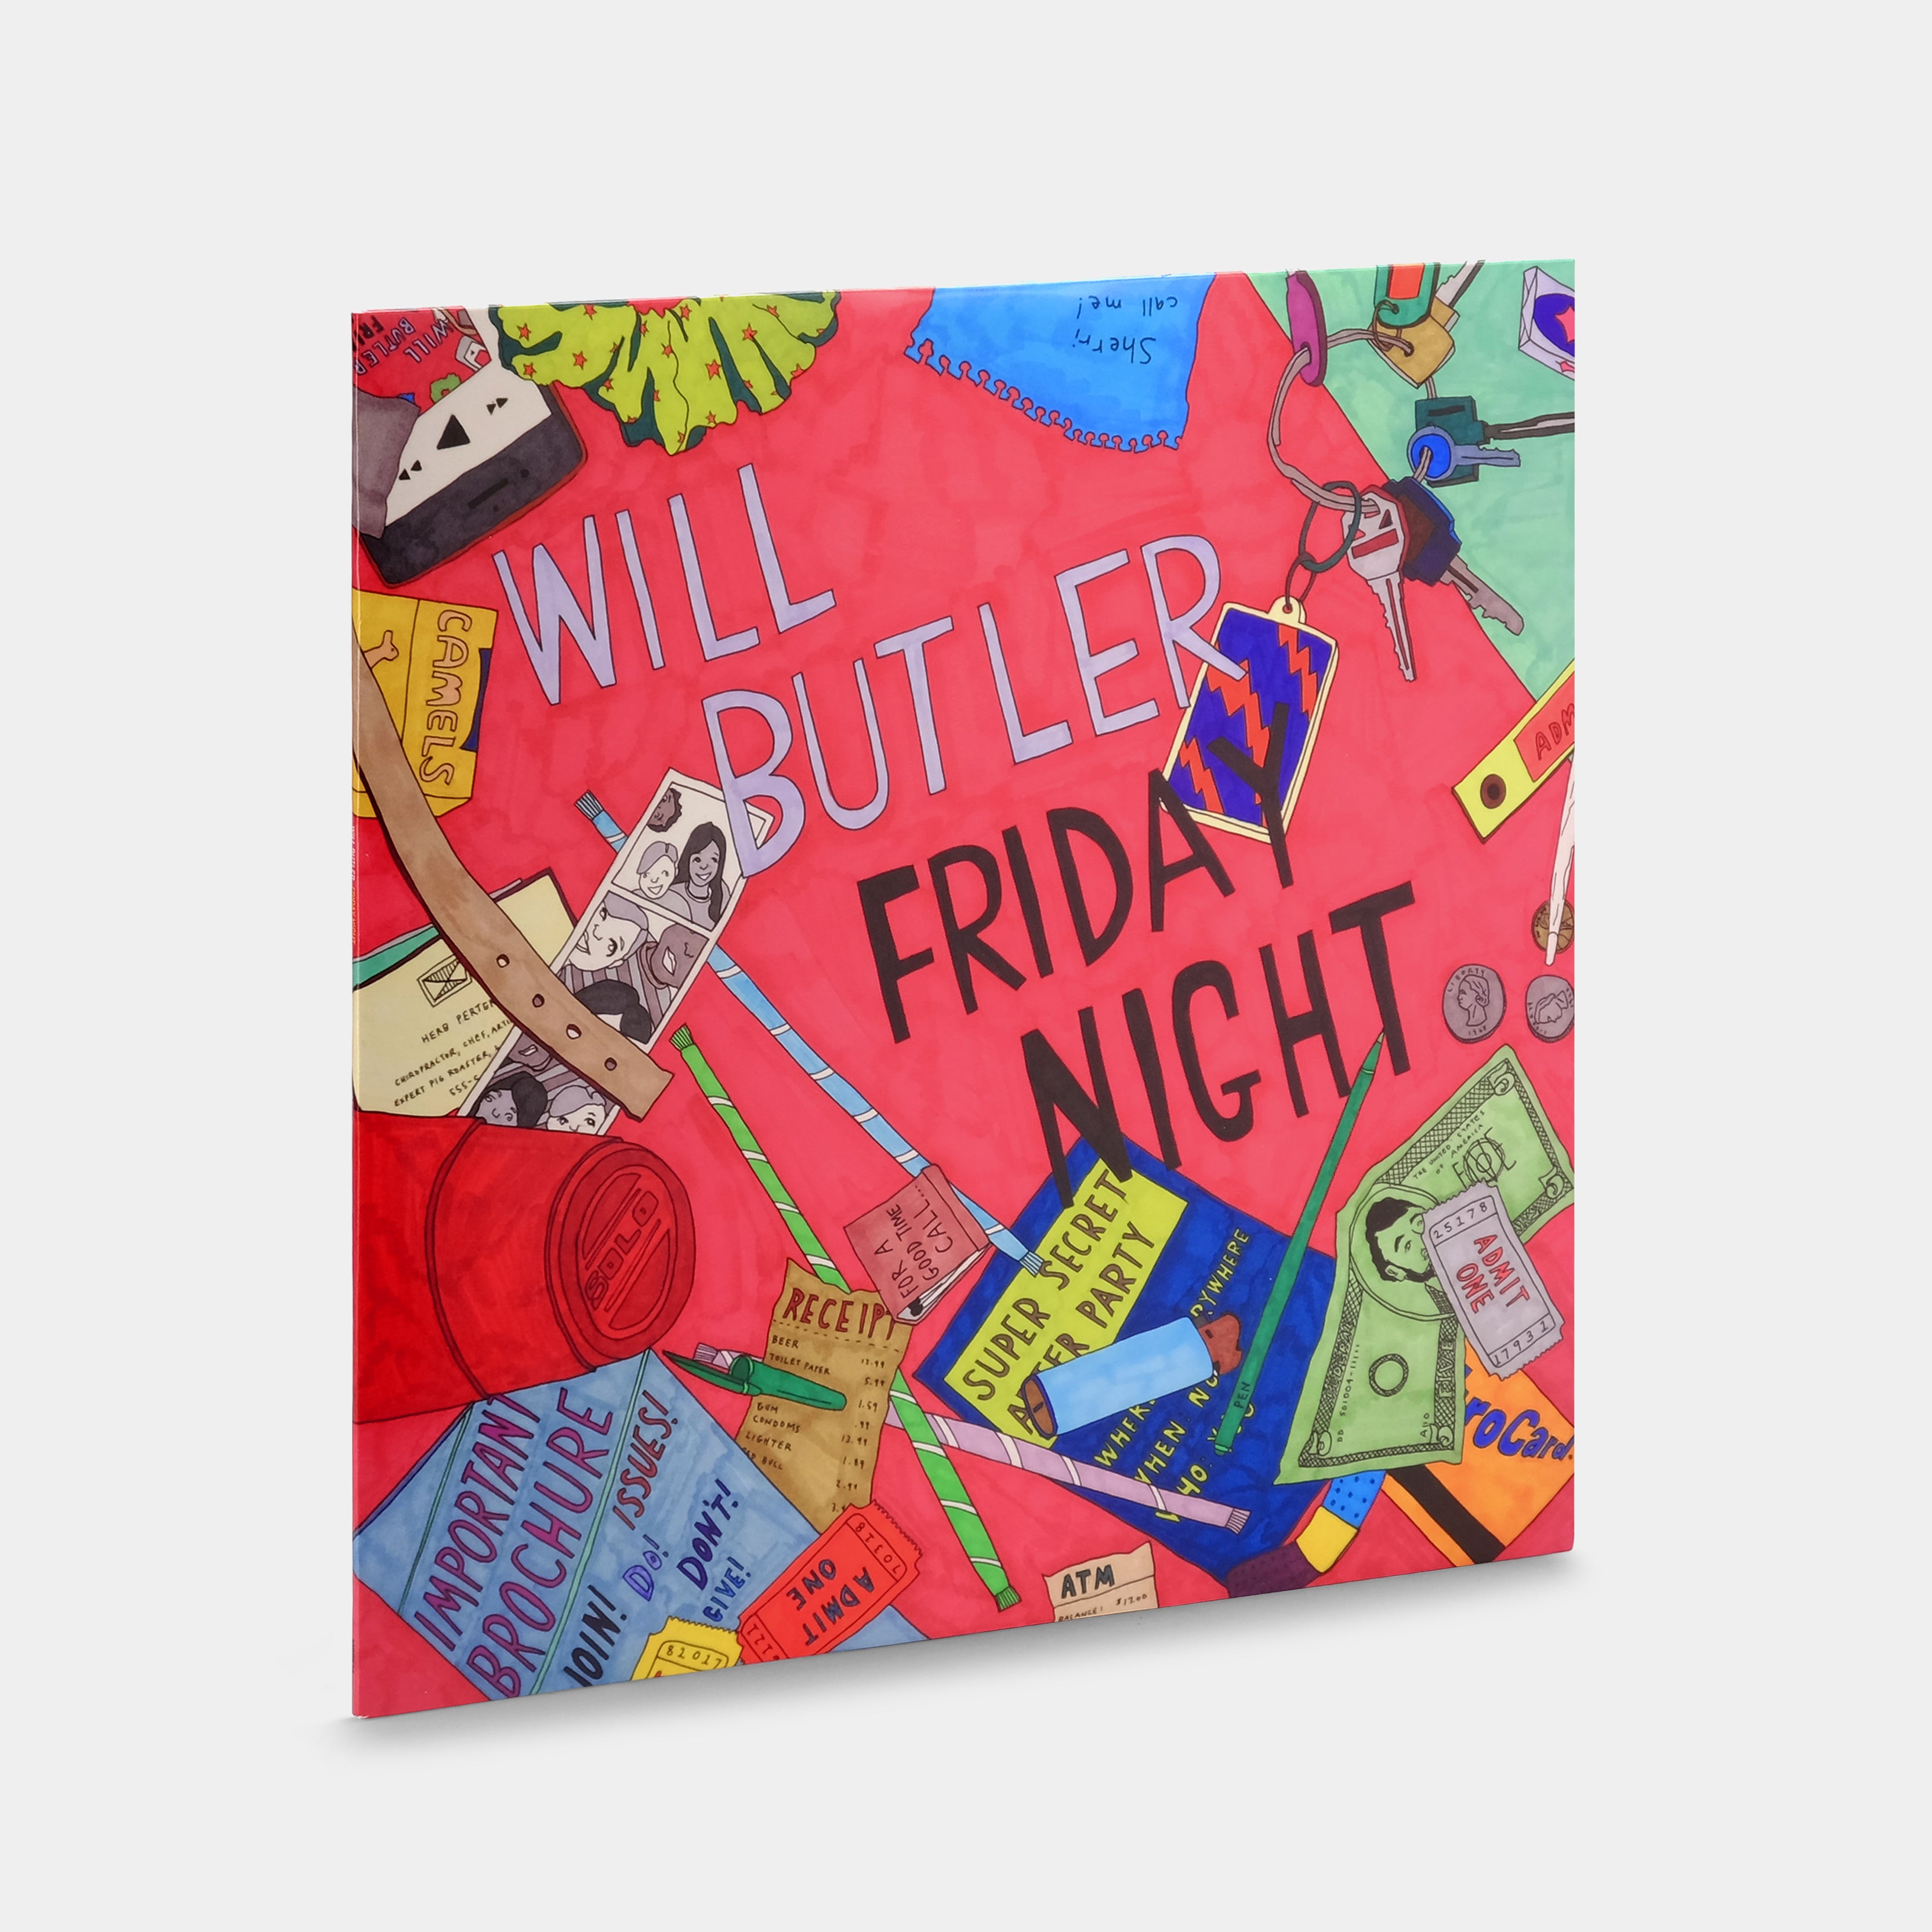 Will Butler - Friday Night LP Vinyl Record